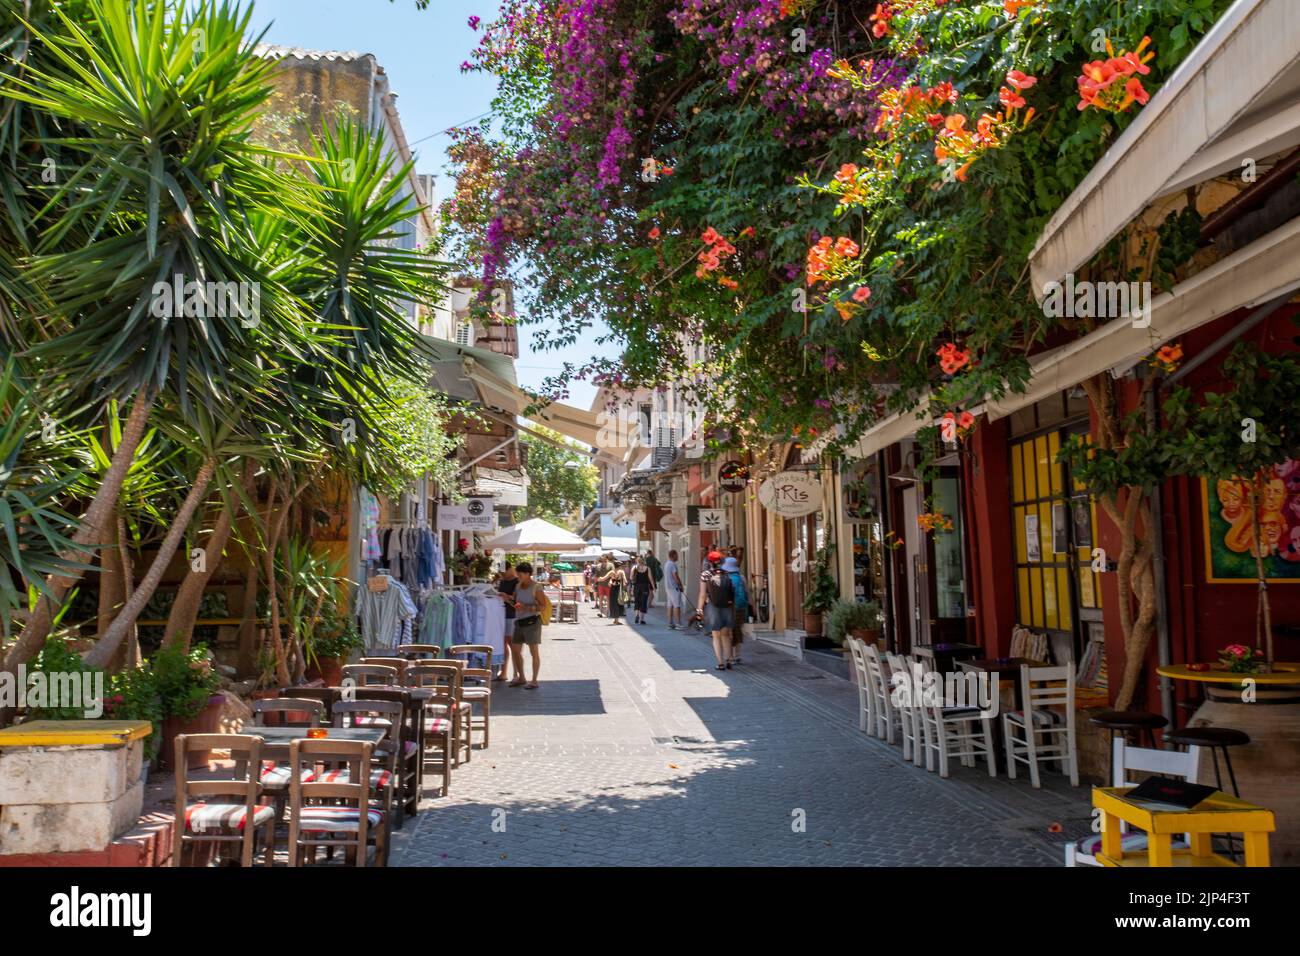 rue commerçante animée de la ville grecque de réthymnon sur l'île de crète, belles ruelles colorées dans la lumière du soir sur l'île de crète. Banque D'Images